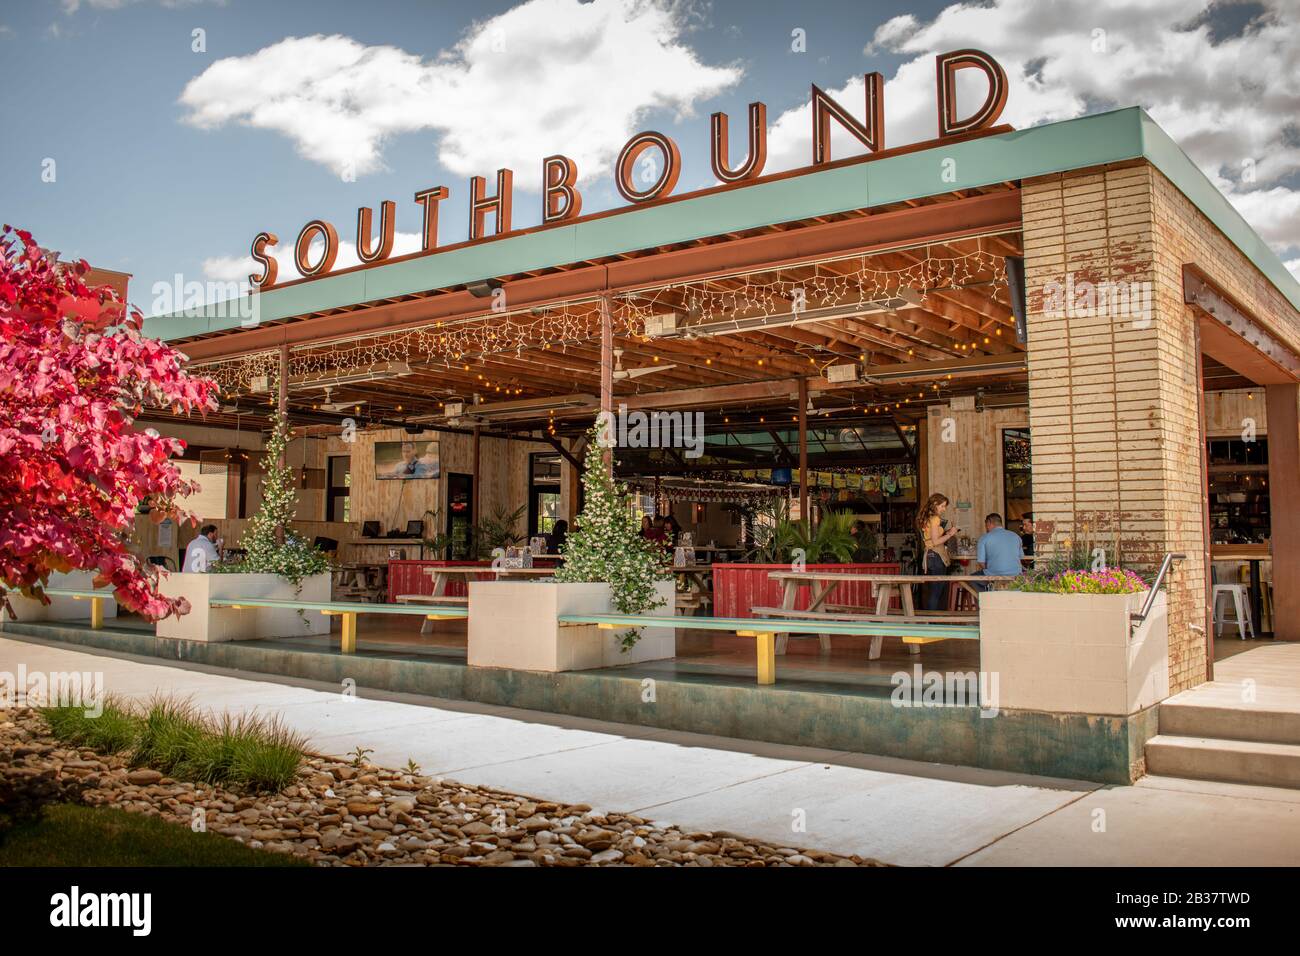 Charlotte, NC/USA - 14 maggio 2019: Media immagine orizzontale del ristorante e bar all'aperto 'Southbound' che mostra il segno del marchio del tetto. Foto Stock